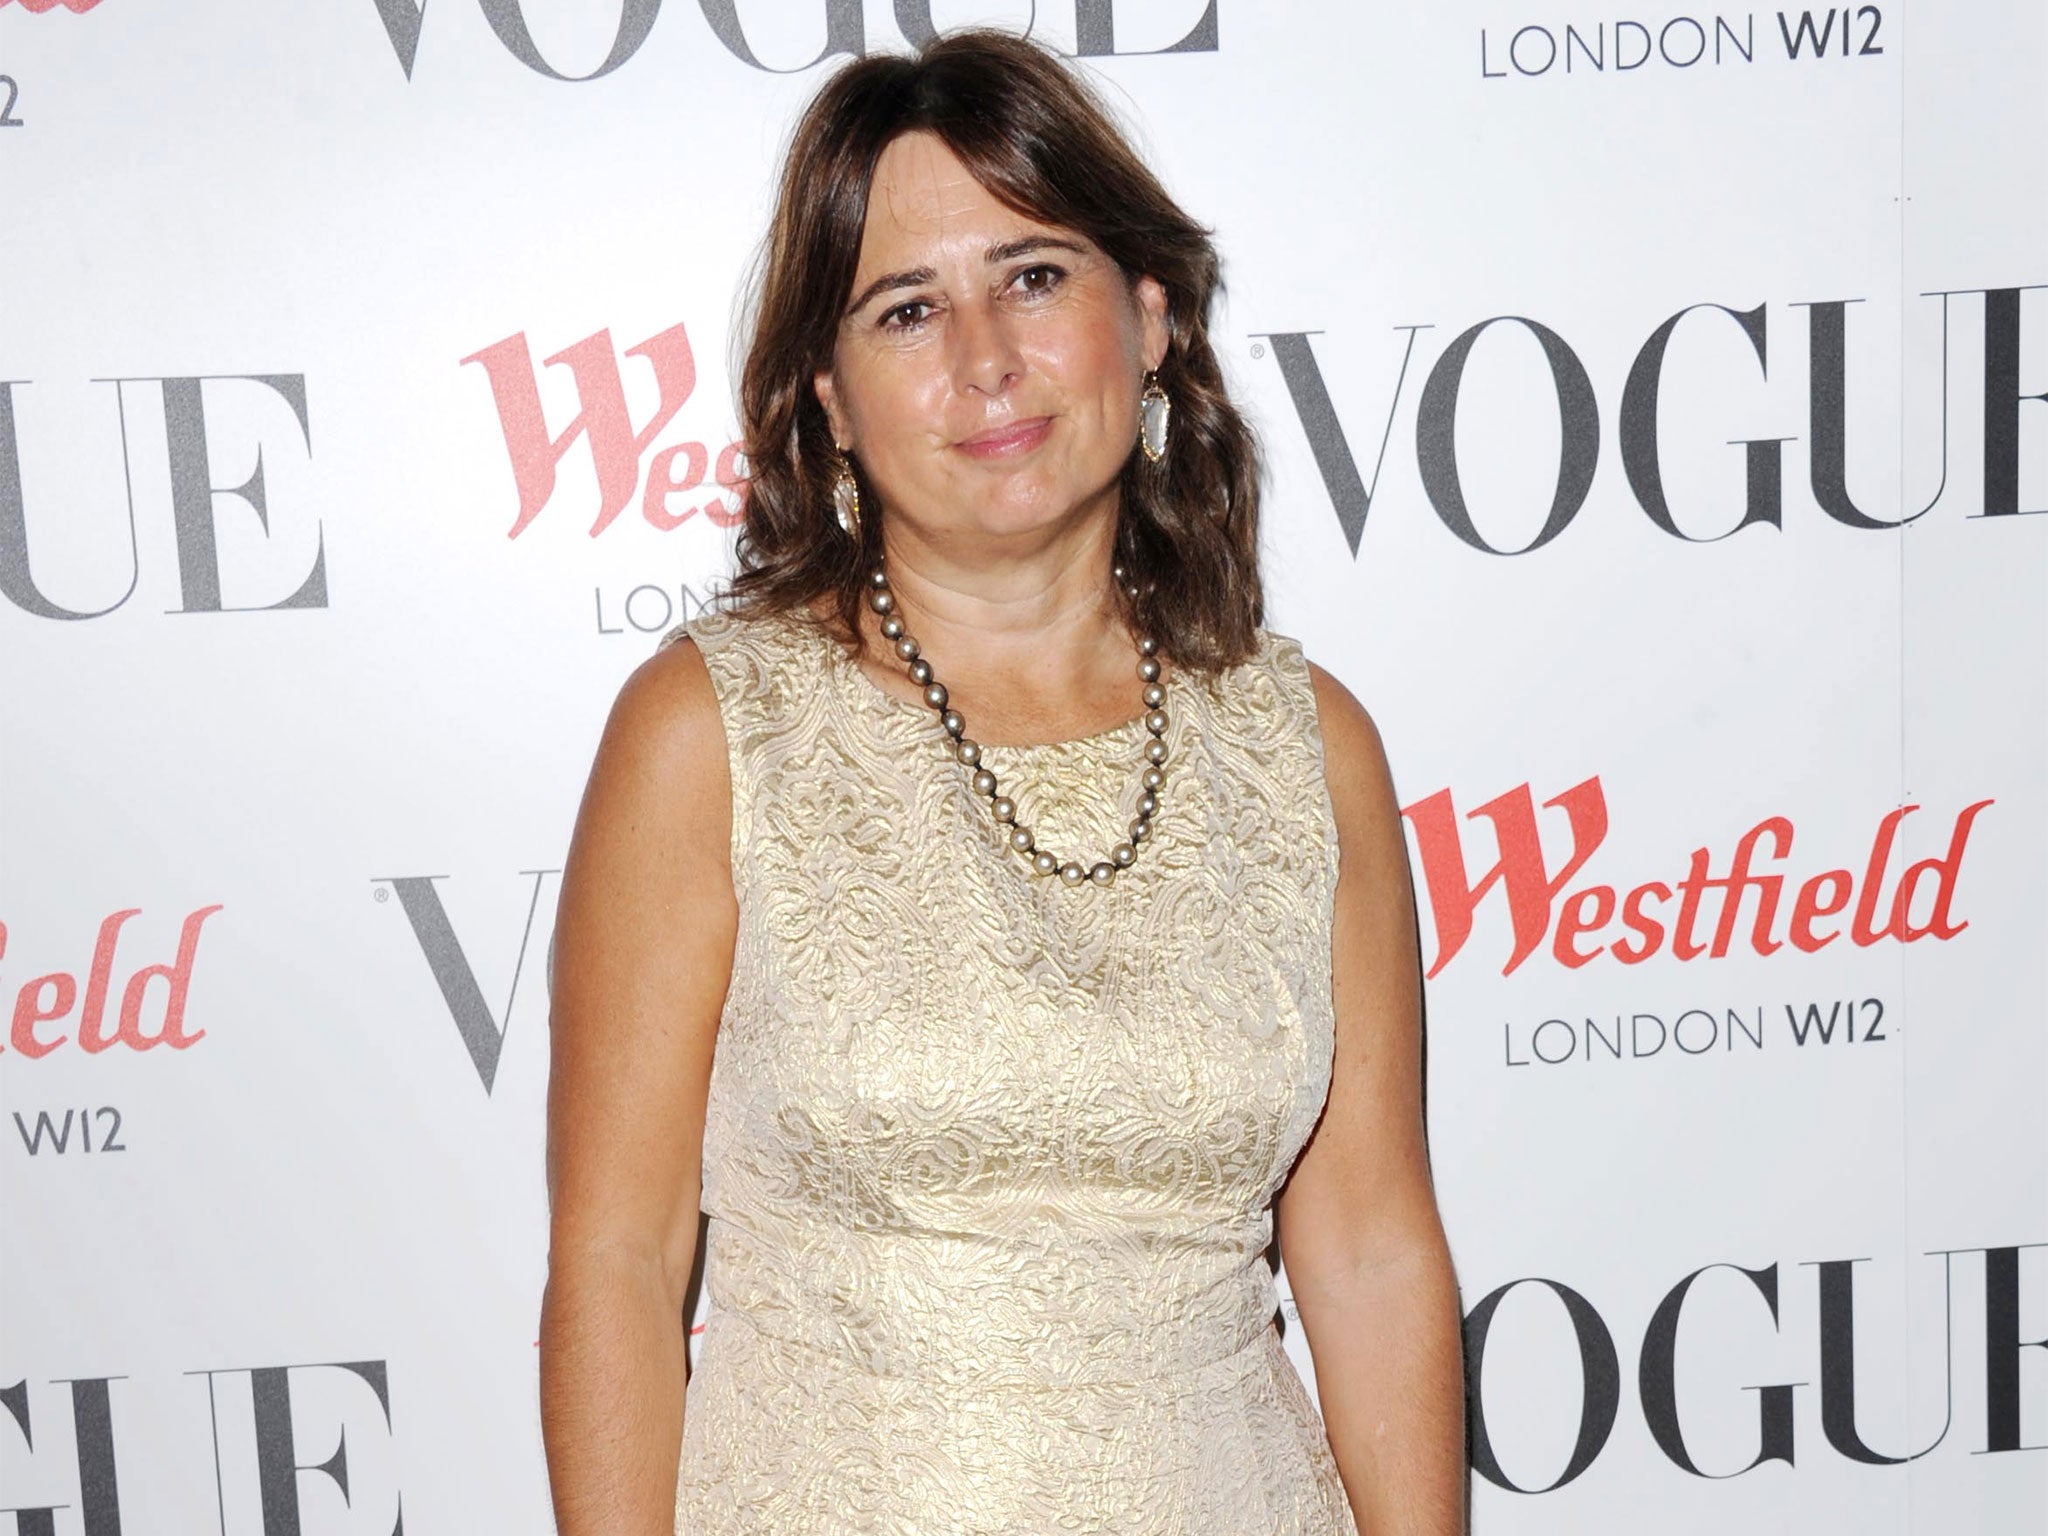 British Vogue editor Alexandra Shulman